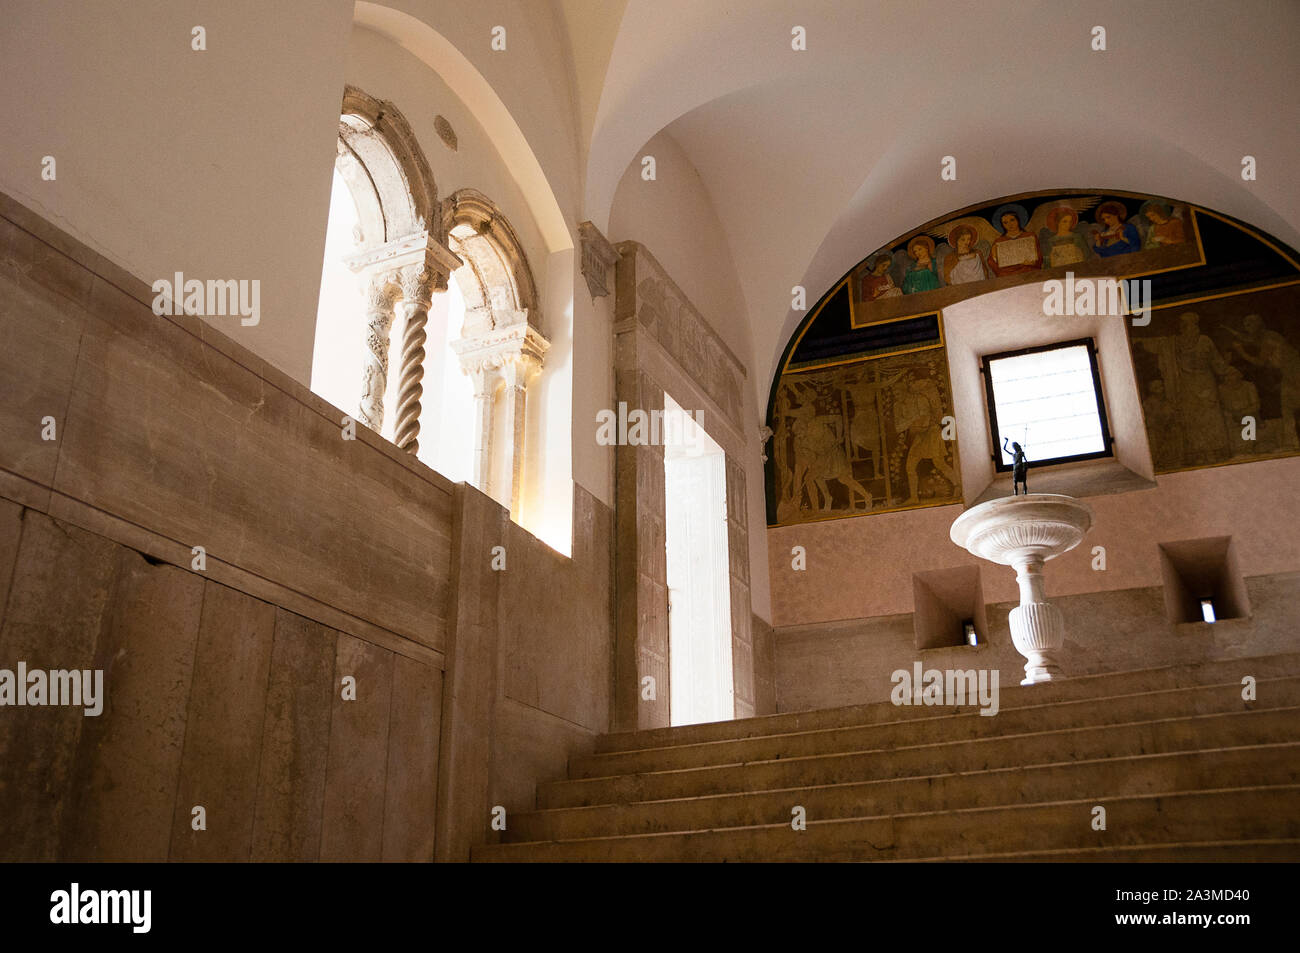 Escalera dentro de la histórica Abadía de Montecassino en Italia, donde los espacios entre espacios se conciben y contemplan cuidadosamente. Foto de stock